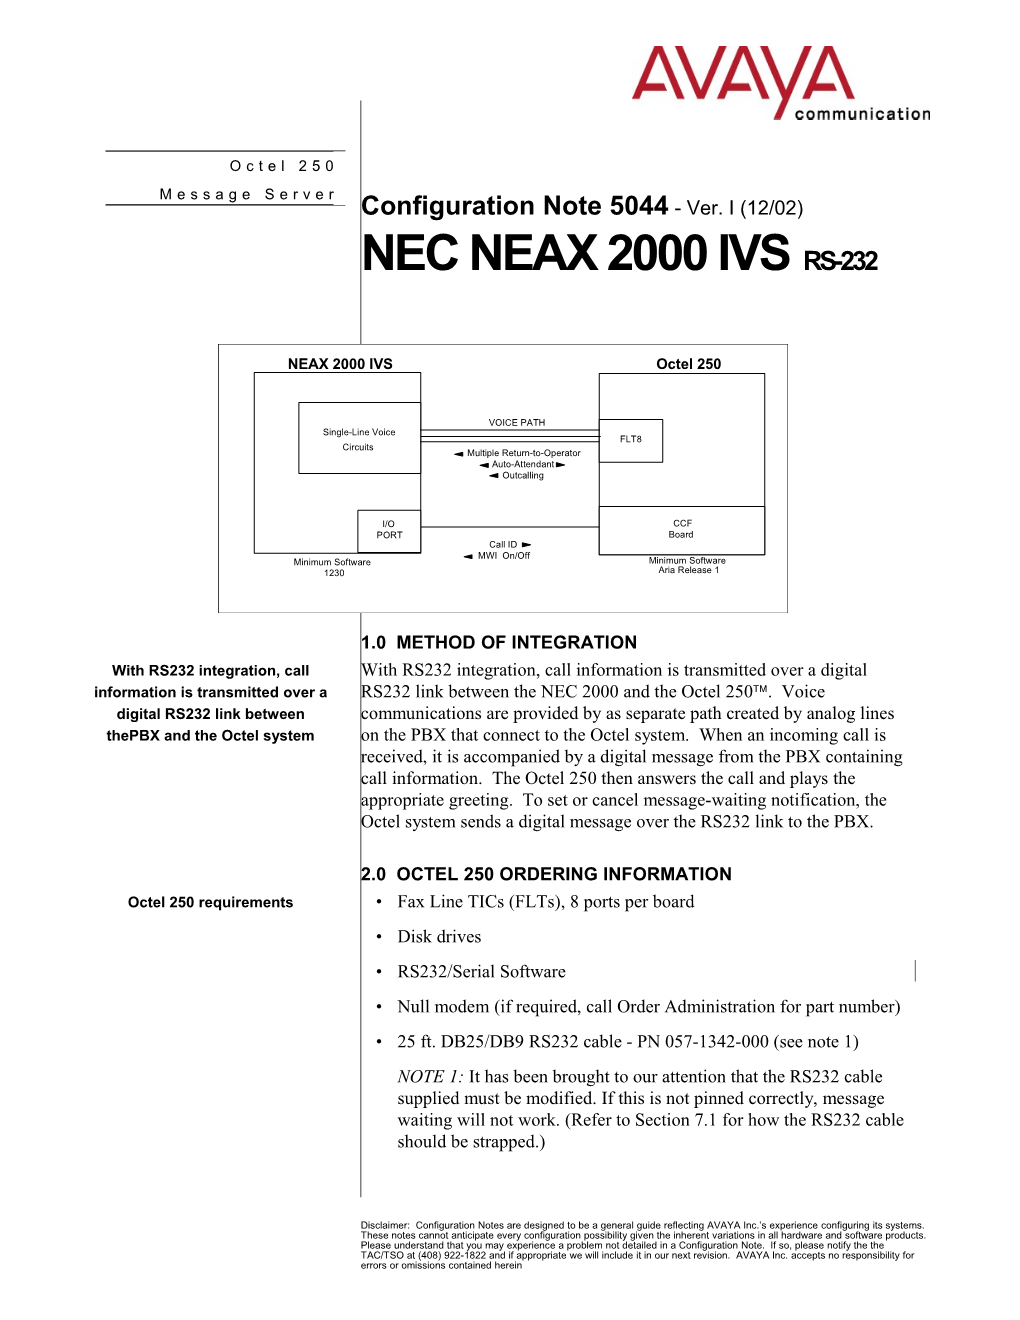 NEC NEAX 2000 IVS (RS-232) Confidential 11